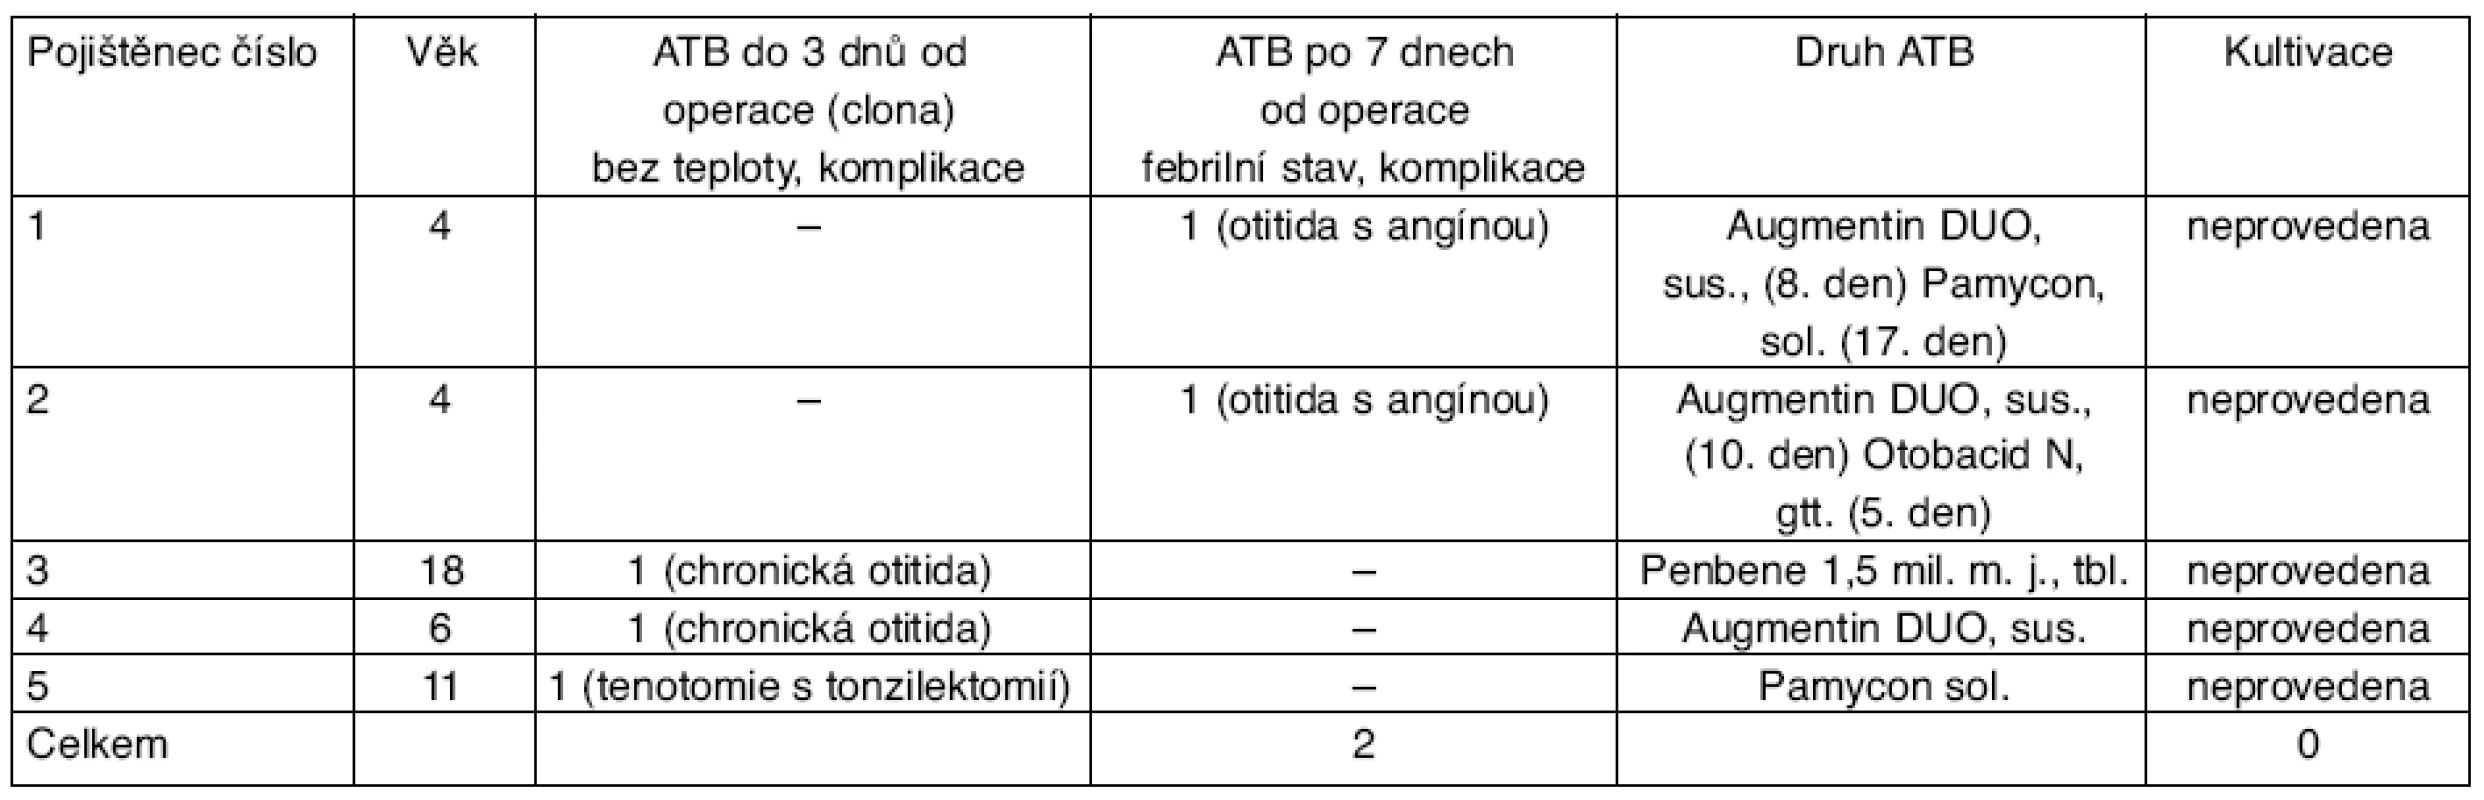 Analýza indikace ATB u pěti z 60 dětí po endoskopické operaci v nosní dutině provedené na oddělení ORL